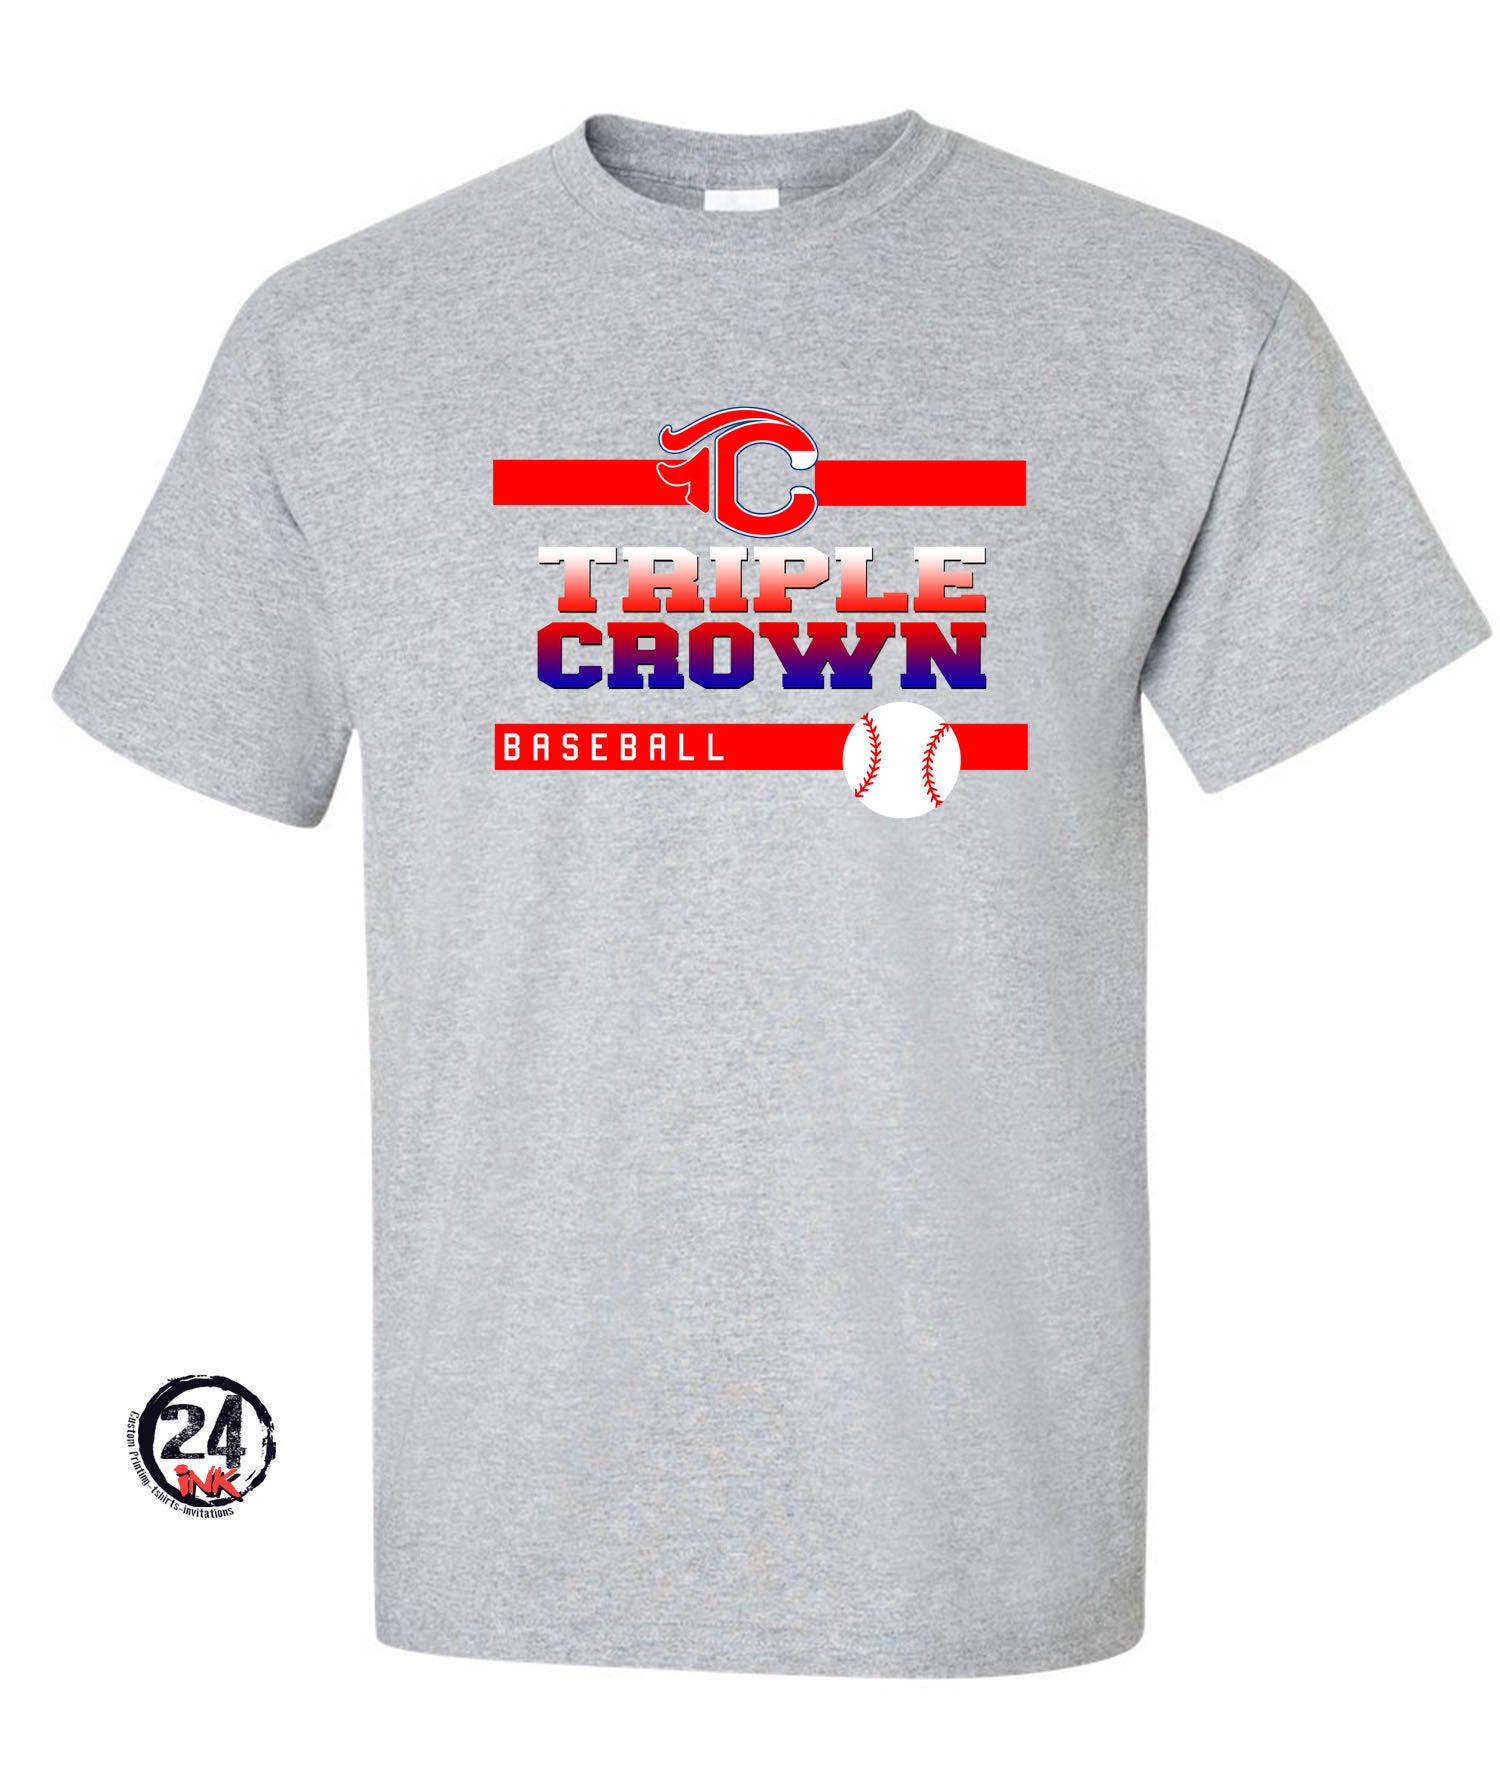 TC Triple Crown T-shirt